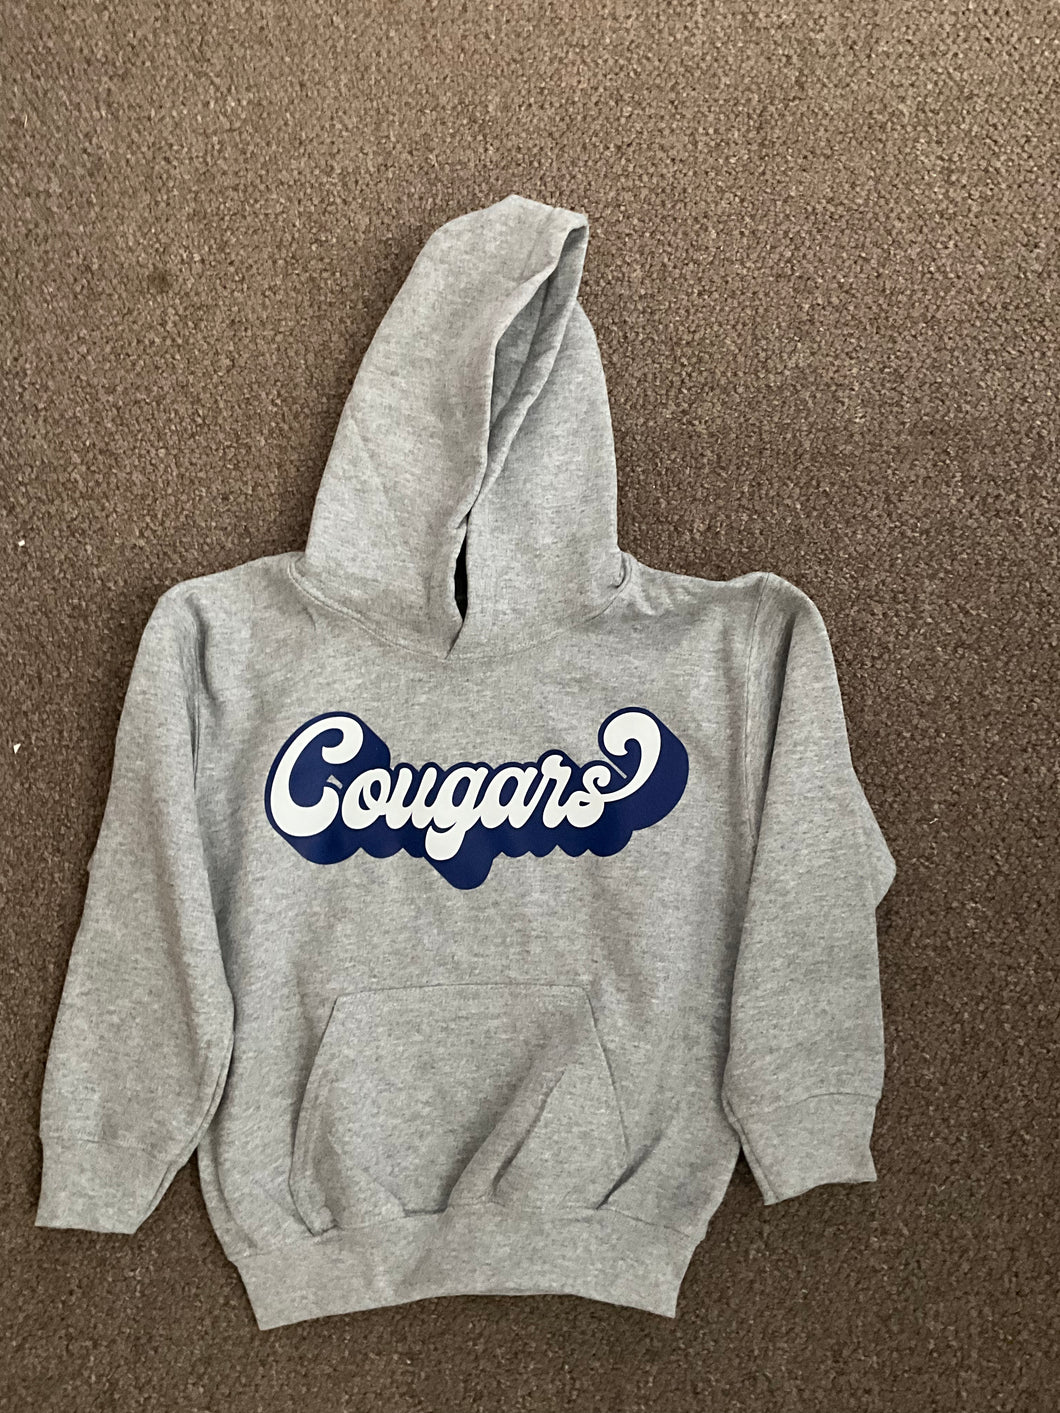 Kings Grant Elementary Cougars/Grey Hoodie Sweatshirt